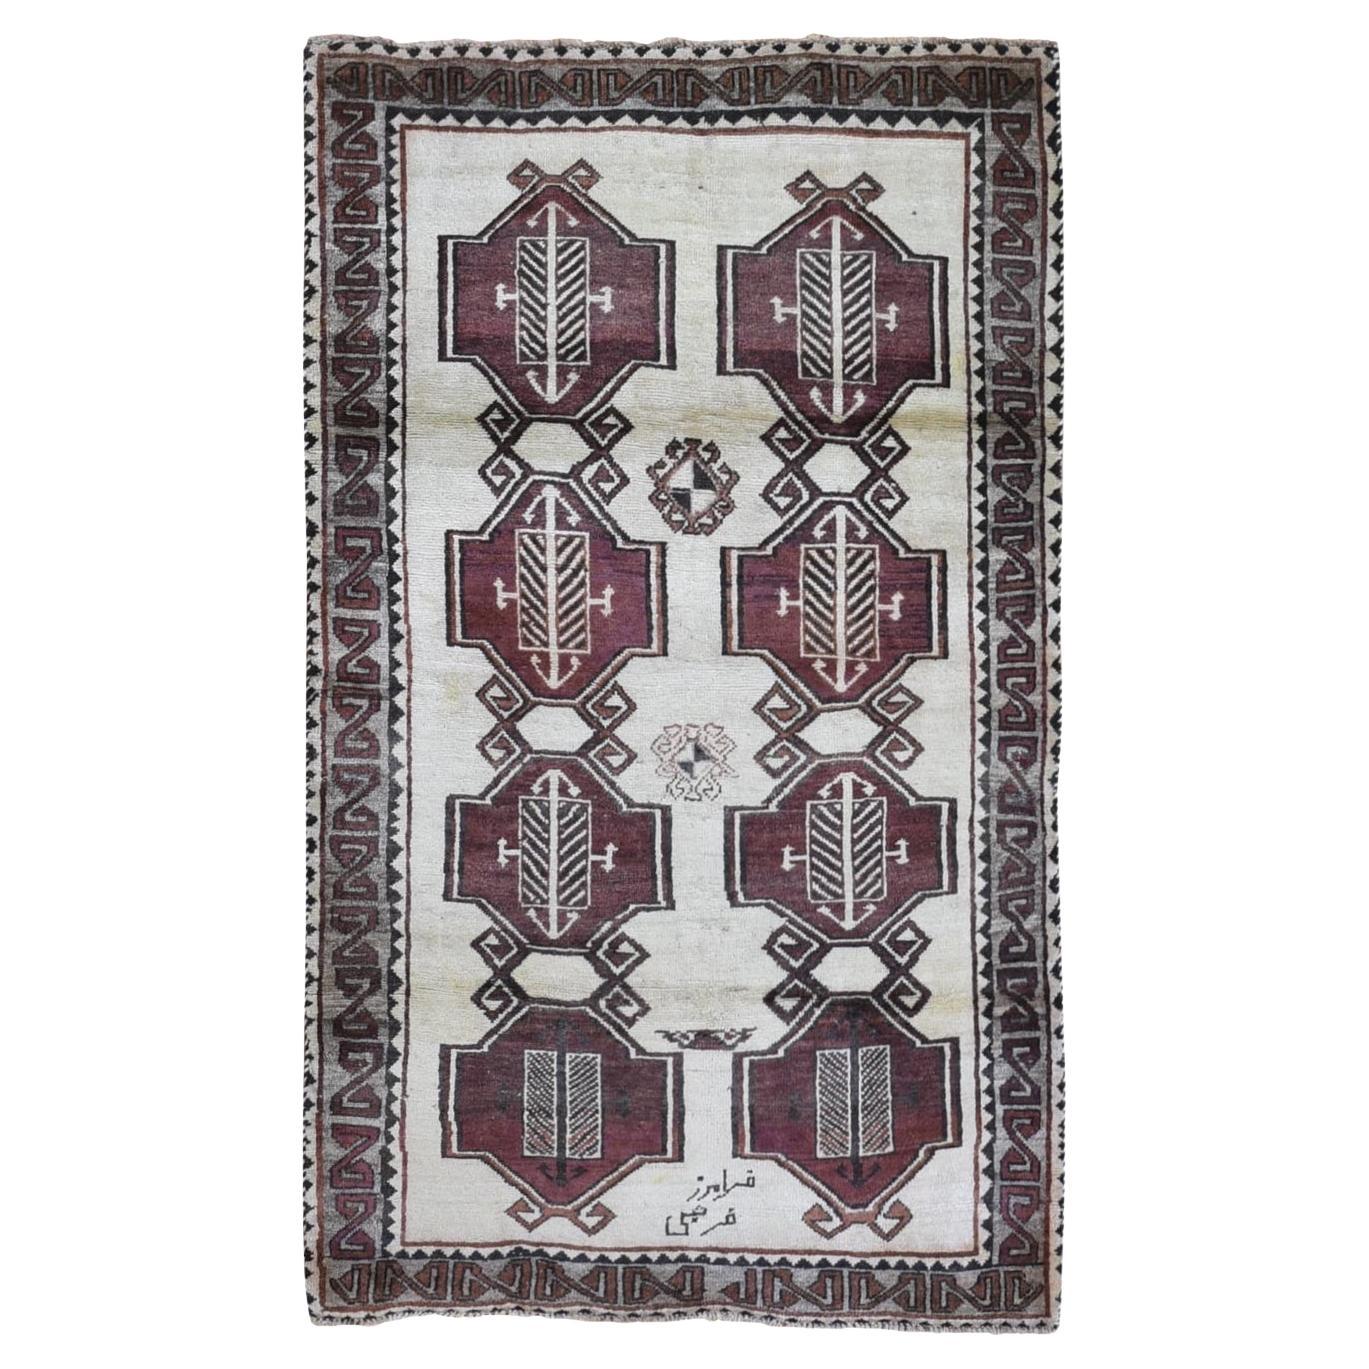 Persischer, handgeknüpfter Gabbeh-Teppich aus reiner Wolle mit geometrischen Medaillons, signiert